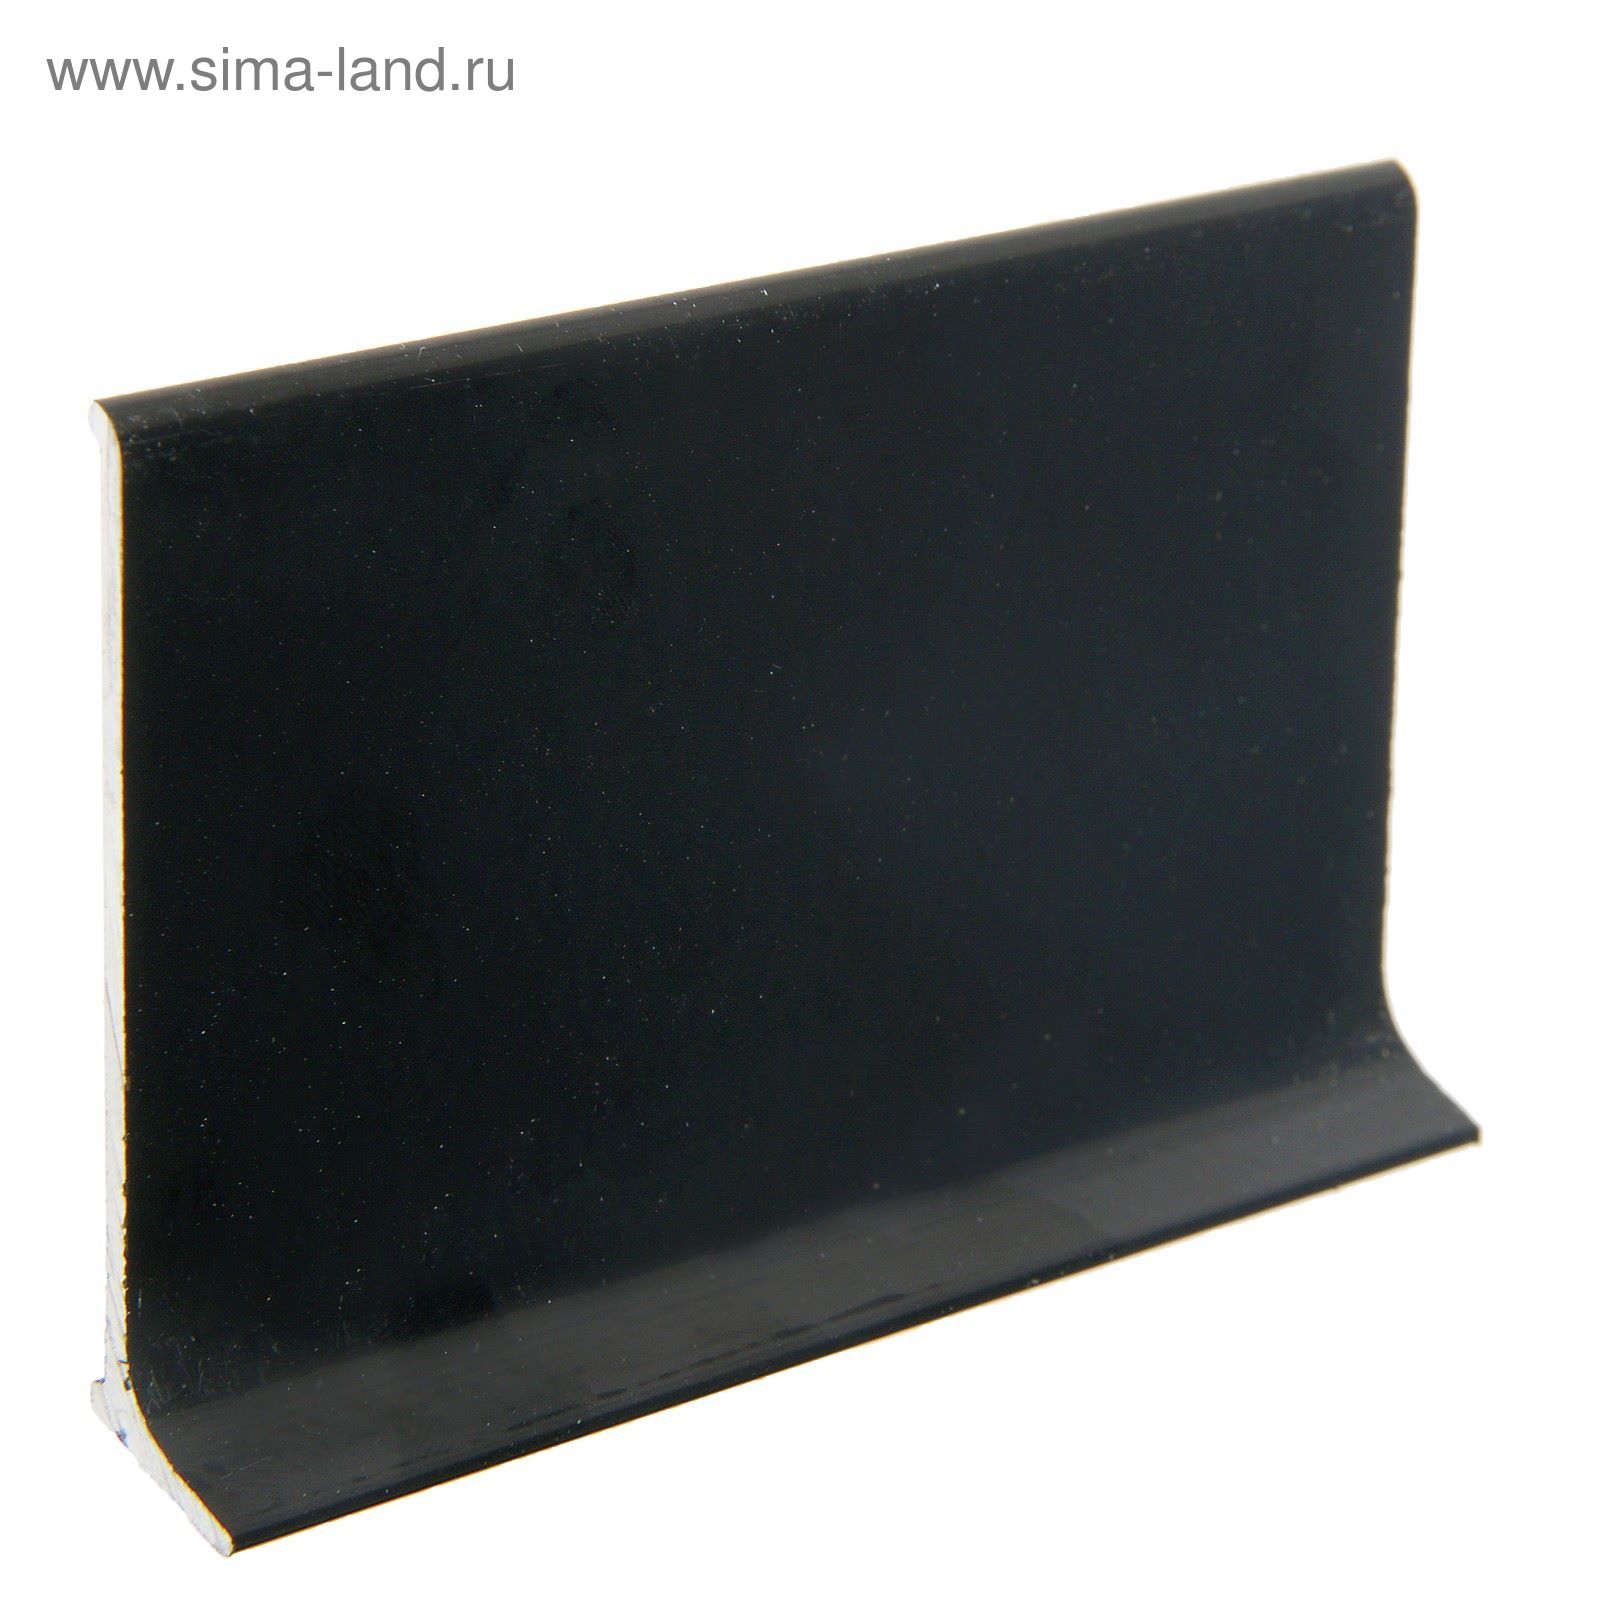 Плинтус алюминиевый l-образный черный (2500*11*60 мм)